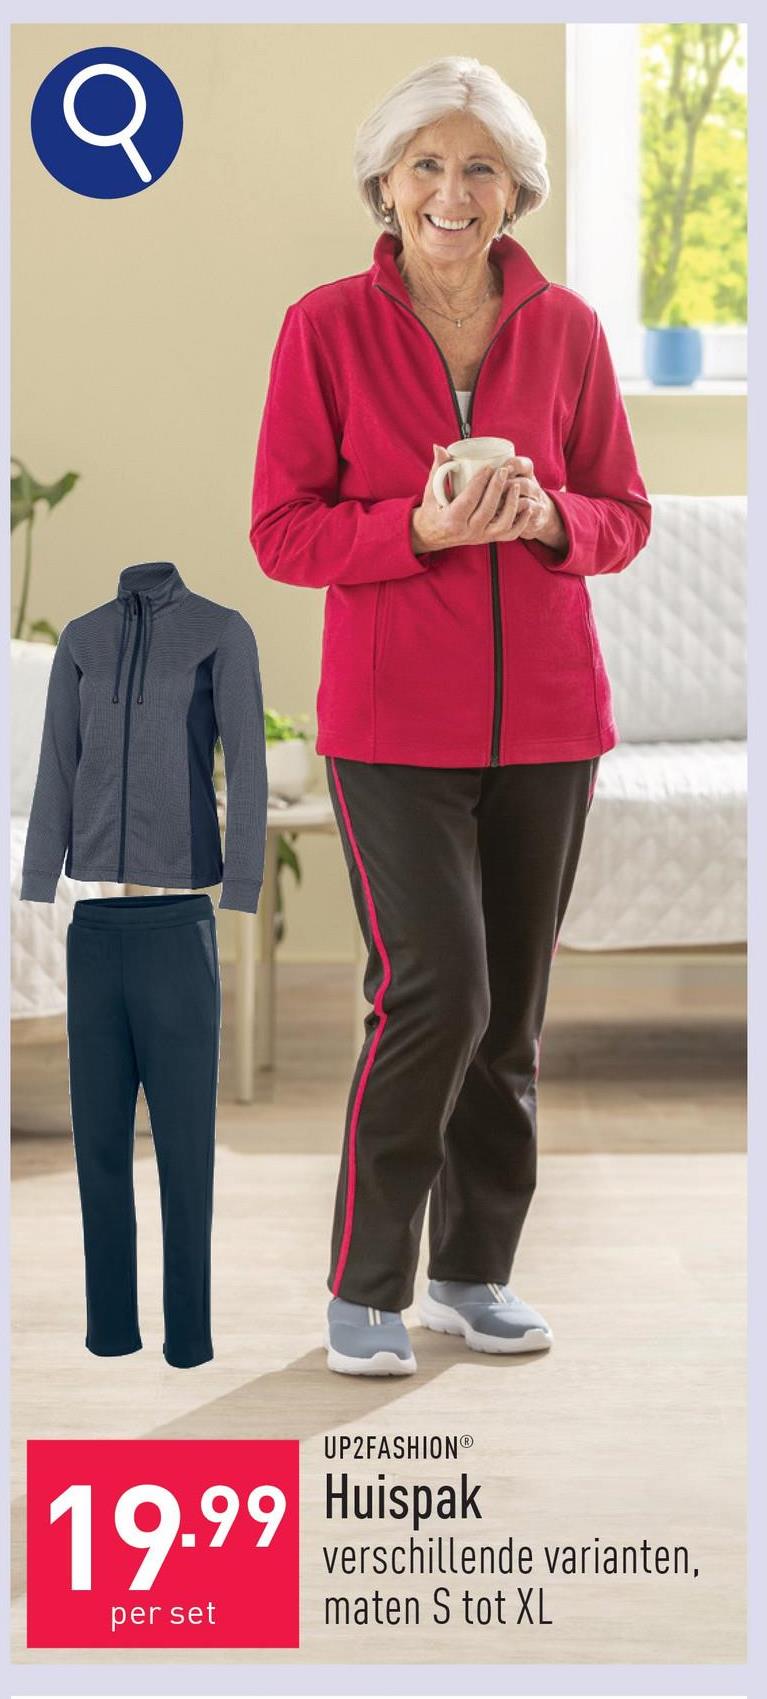 Huispak katoen/polyester, vest: regular fit, broek: classic fit, keuze uit verschillende varianten, maten S tot XL, OEKO-TEX®-gecertificeerd